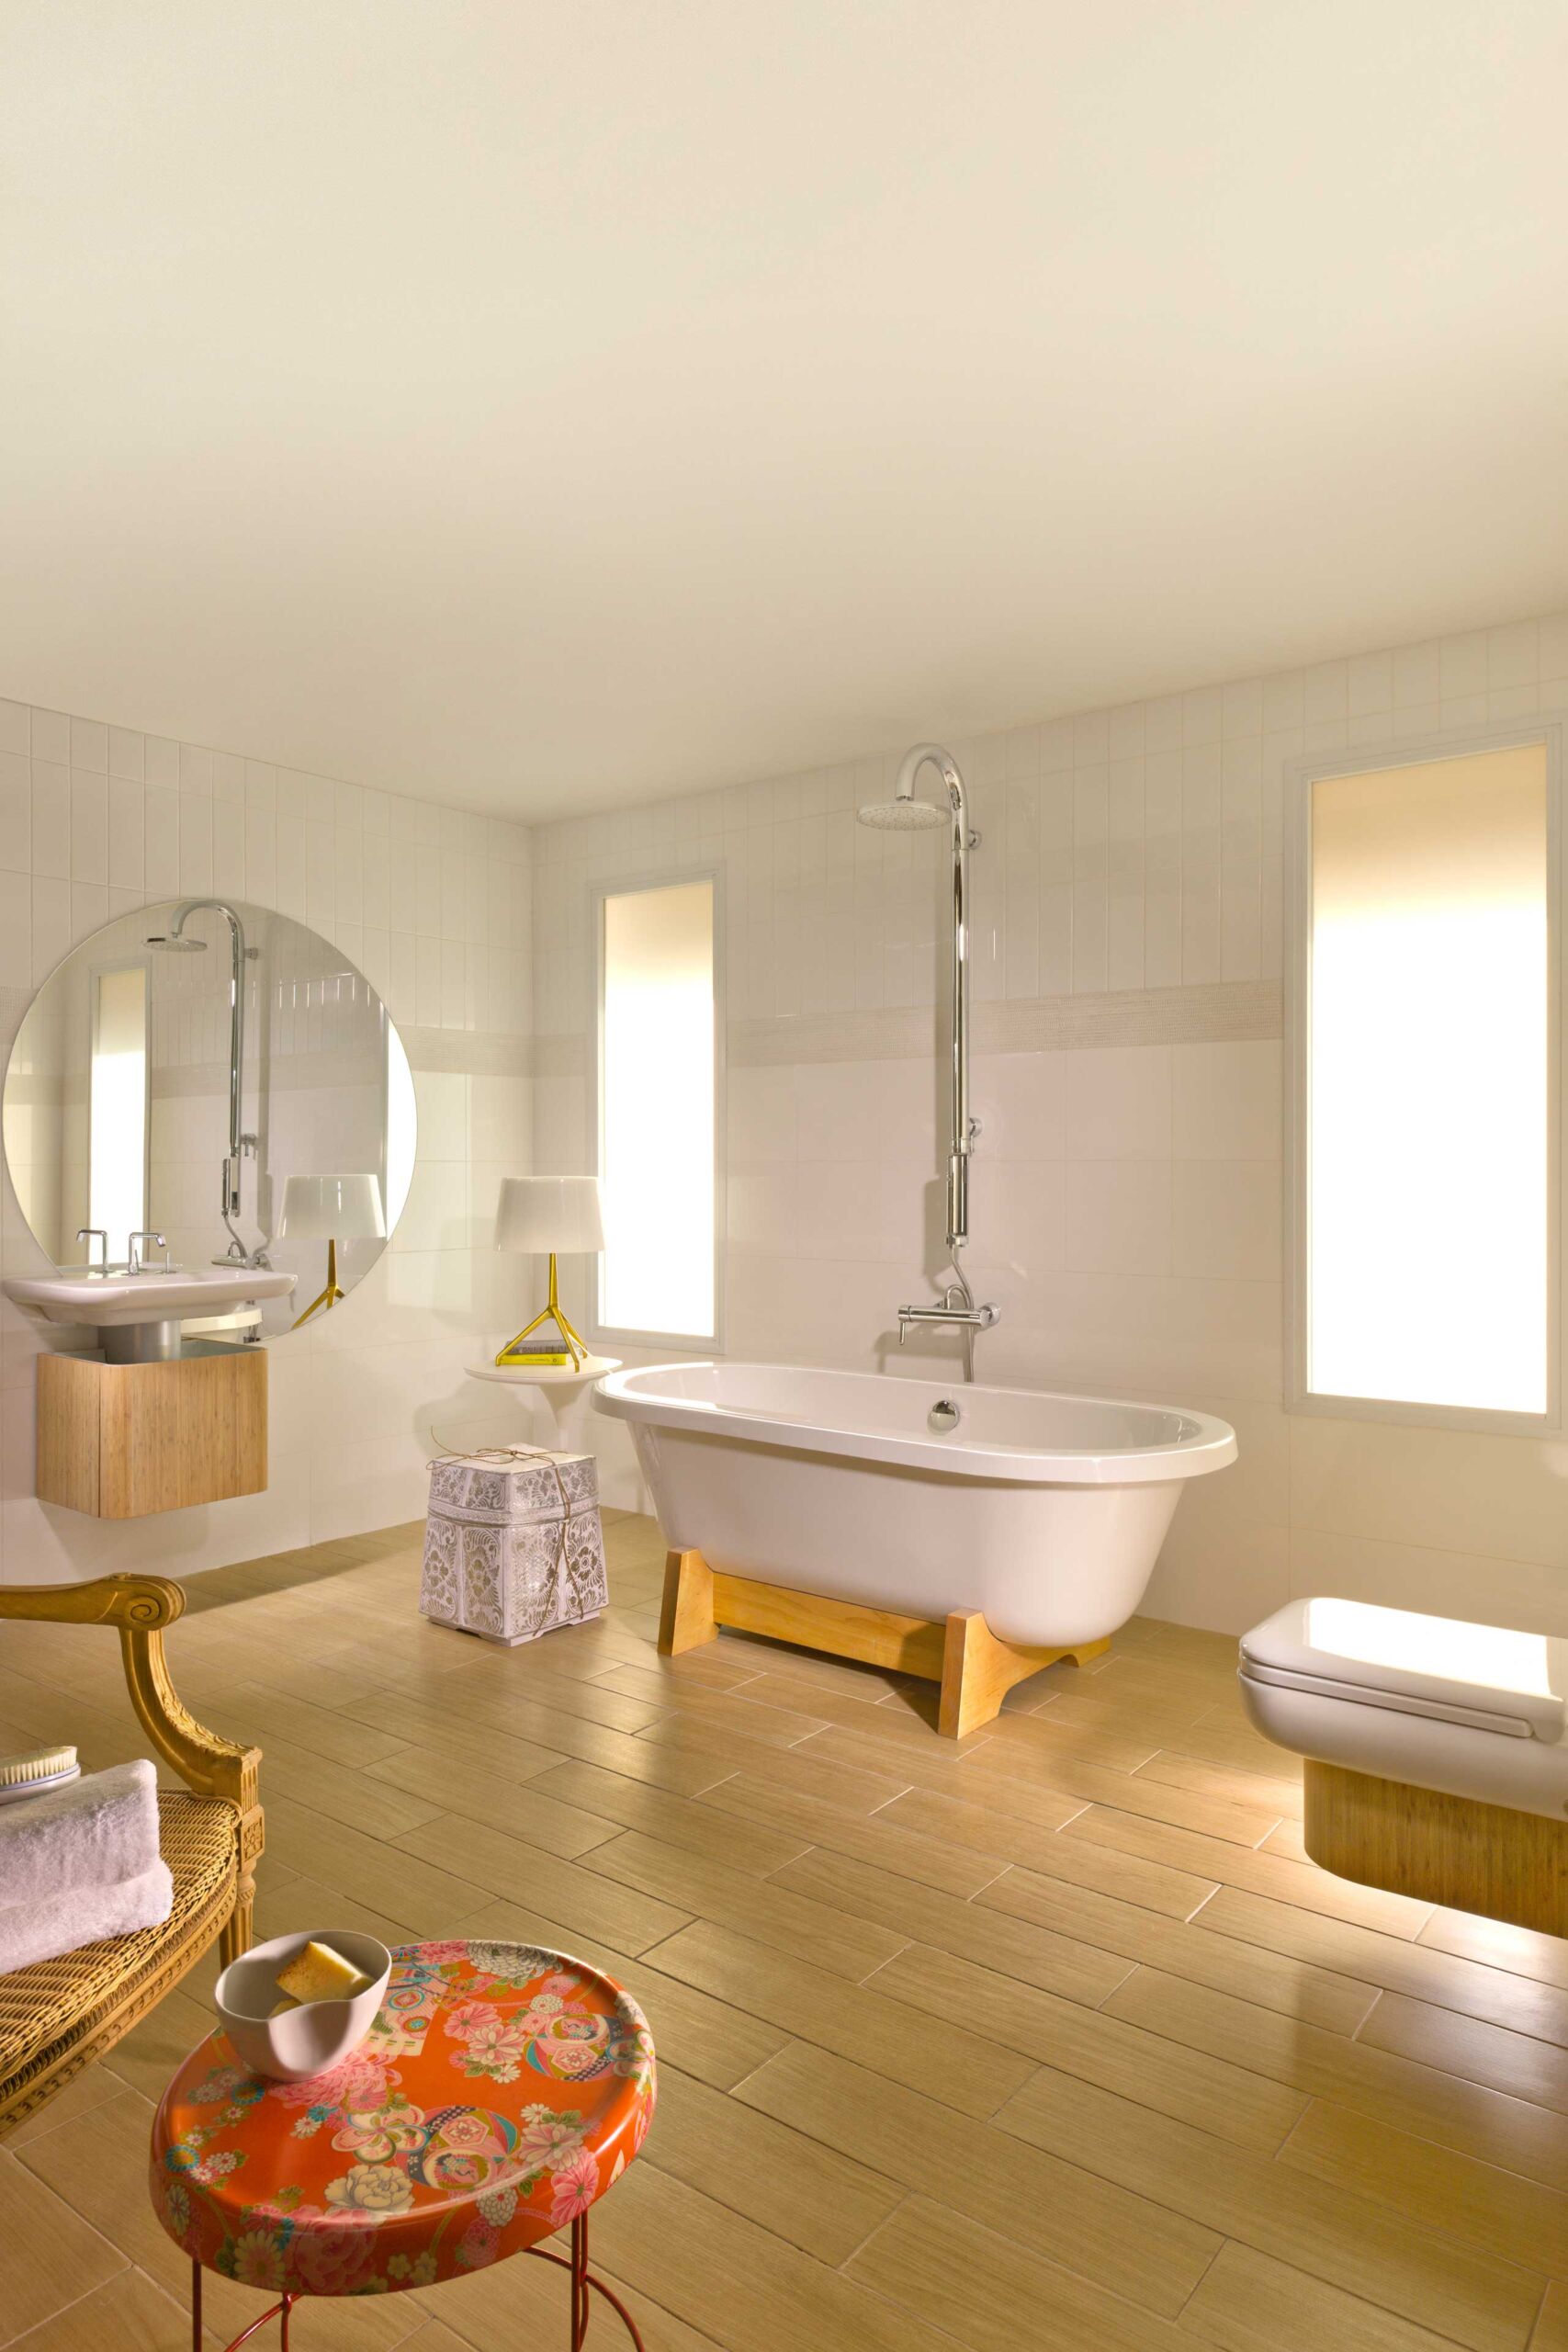 צילום עיצוב פנים בגווני לבן ועץ באולם תצוגה של זהבי עצמון חדר אמבטיה עם דוש גשם שירותים אסלה תלוייה כיור ומראה עגולה